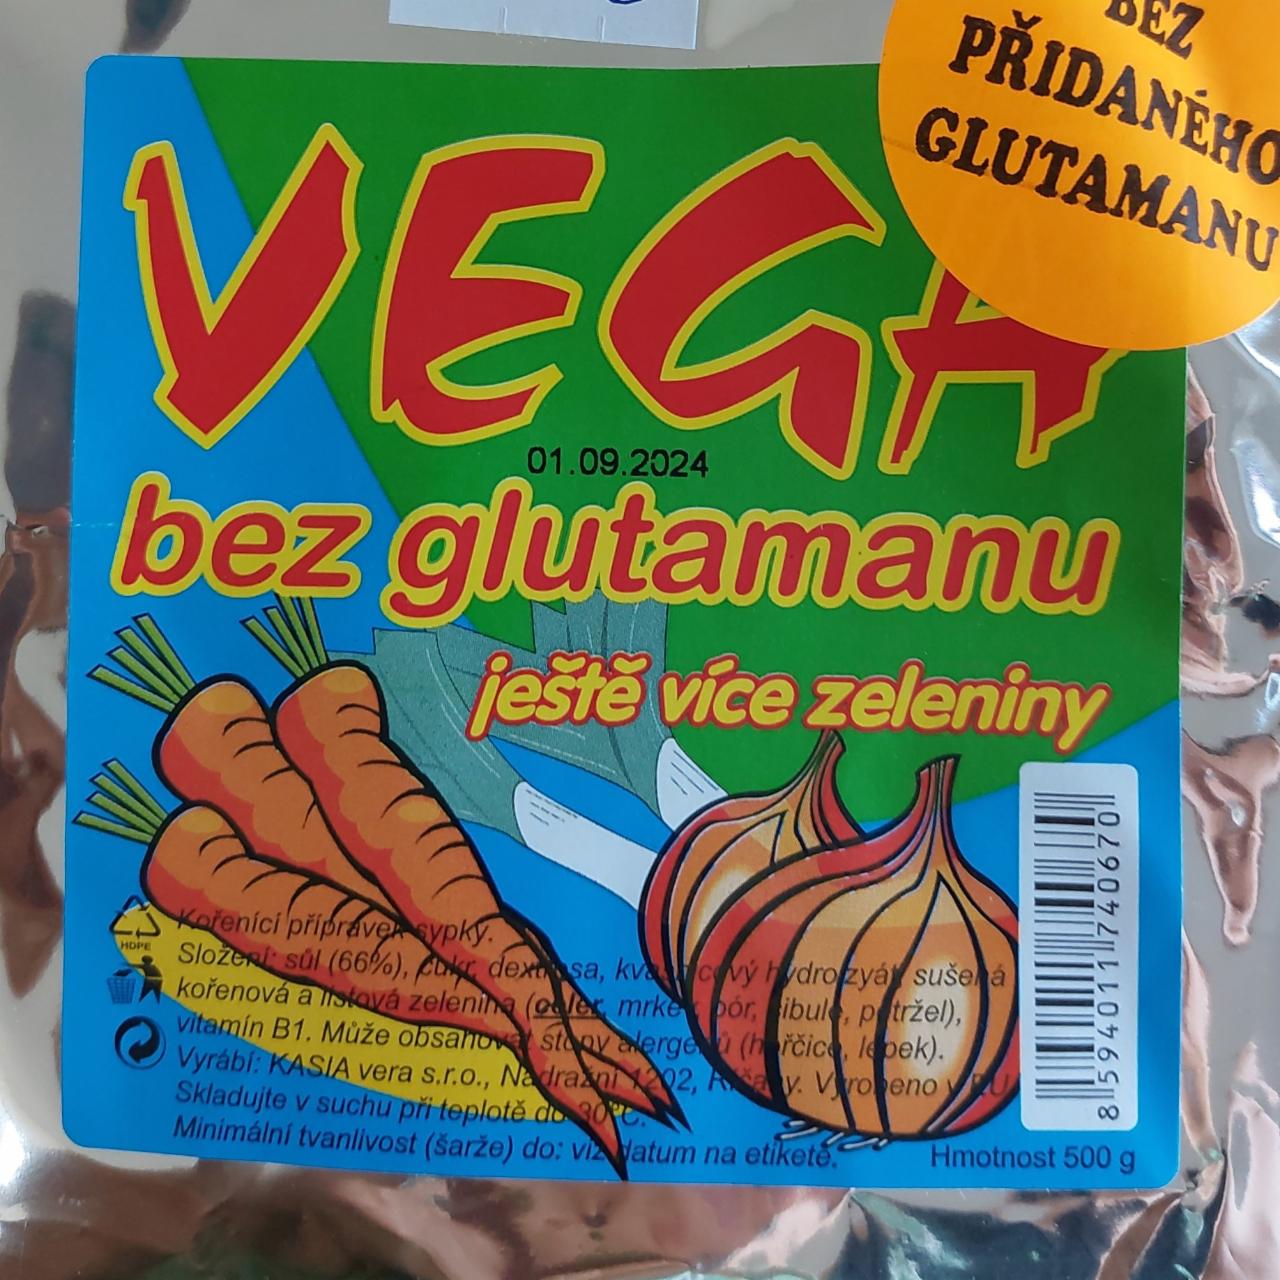 Fotografie - Vega bez glutamanu ještě více zeleniny